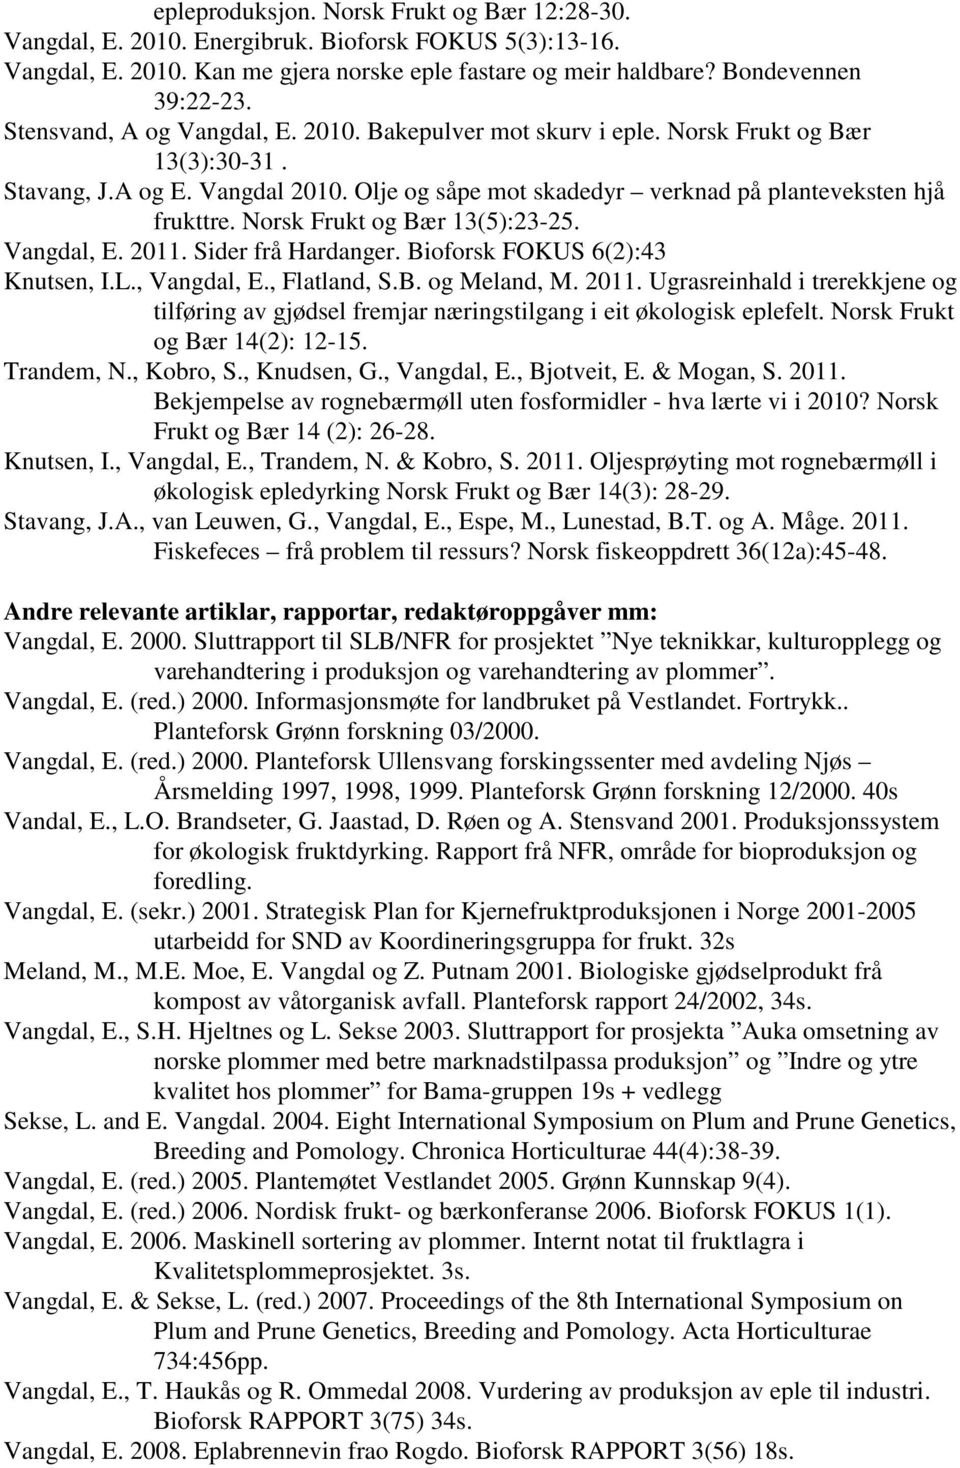 Norsk Frukt og Bær 13(5):23-25. Vangdal, E. 2011. Sider frå Hardanger. Bioforsk FOKUS 6(2):43 Knutsen, I.L., Vangdal, E., Flatland, S.B. og Meland, M. 2011. Ugrasreinhald i trerekkjene og tilføring av gjødsel fremjar næringstilgang i eit økologisk eplefelt.